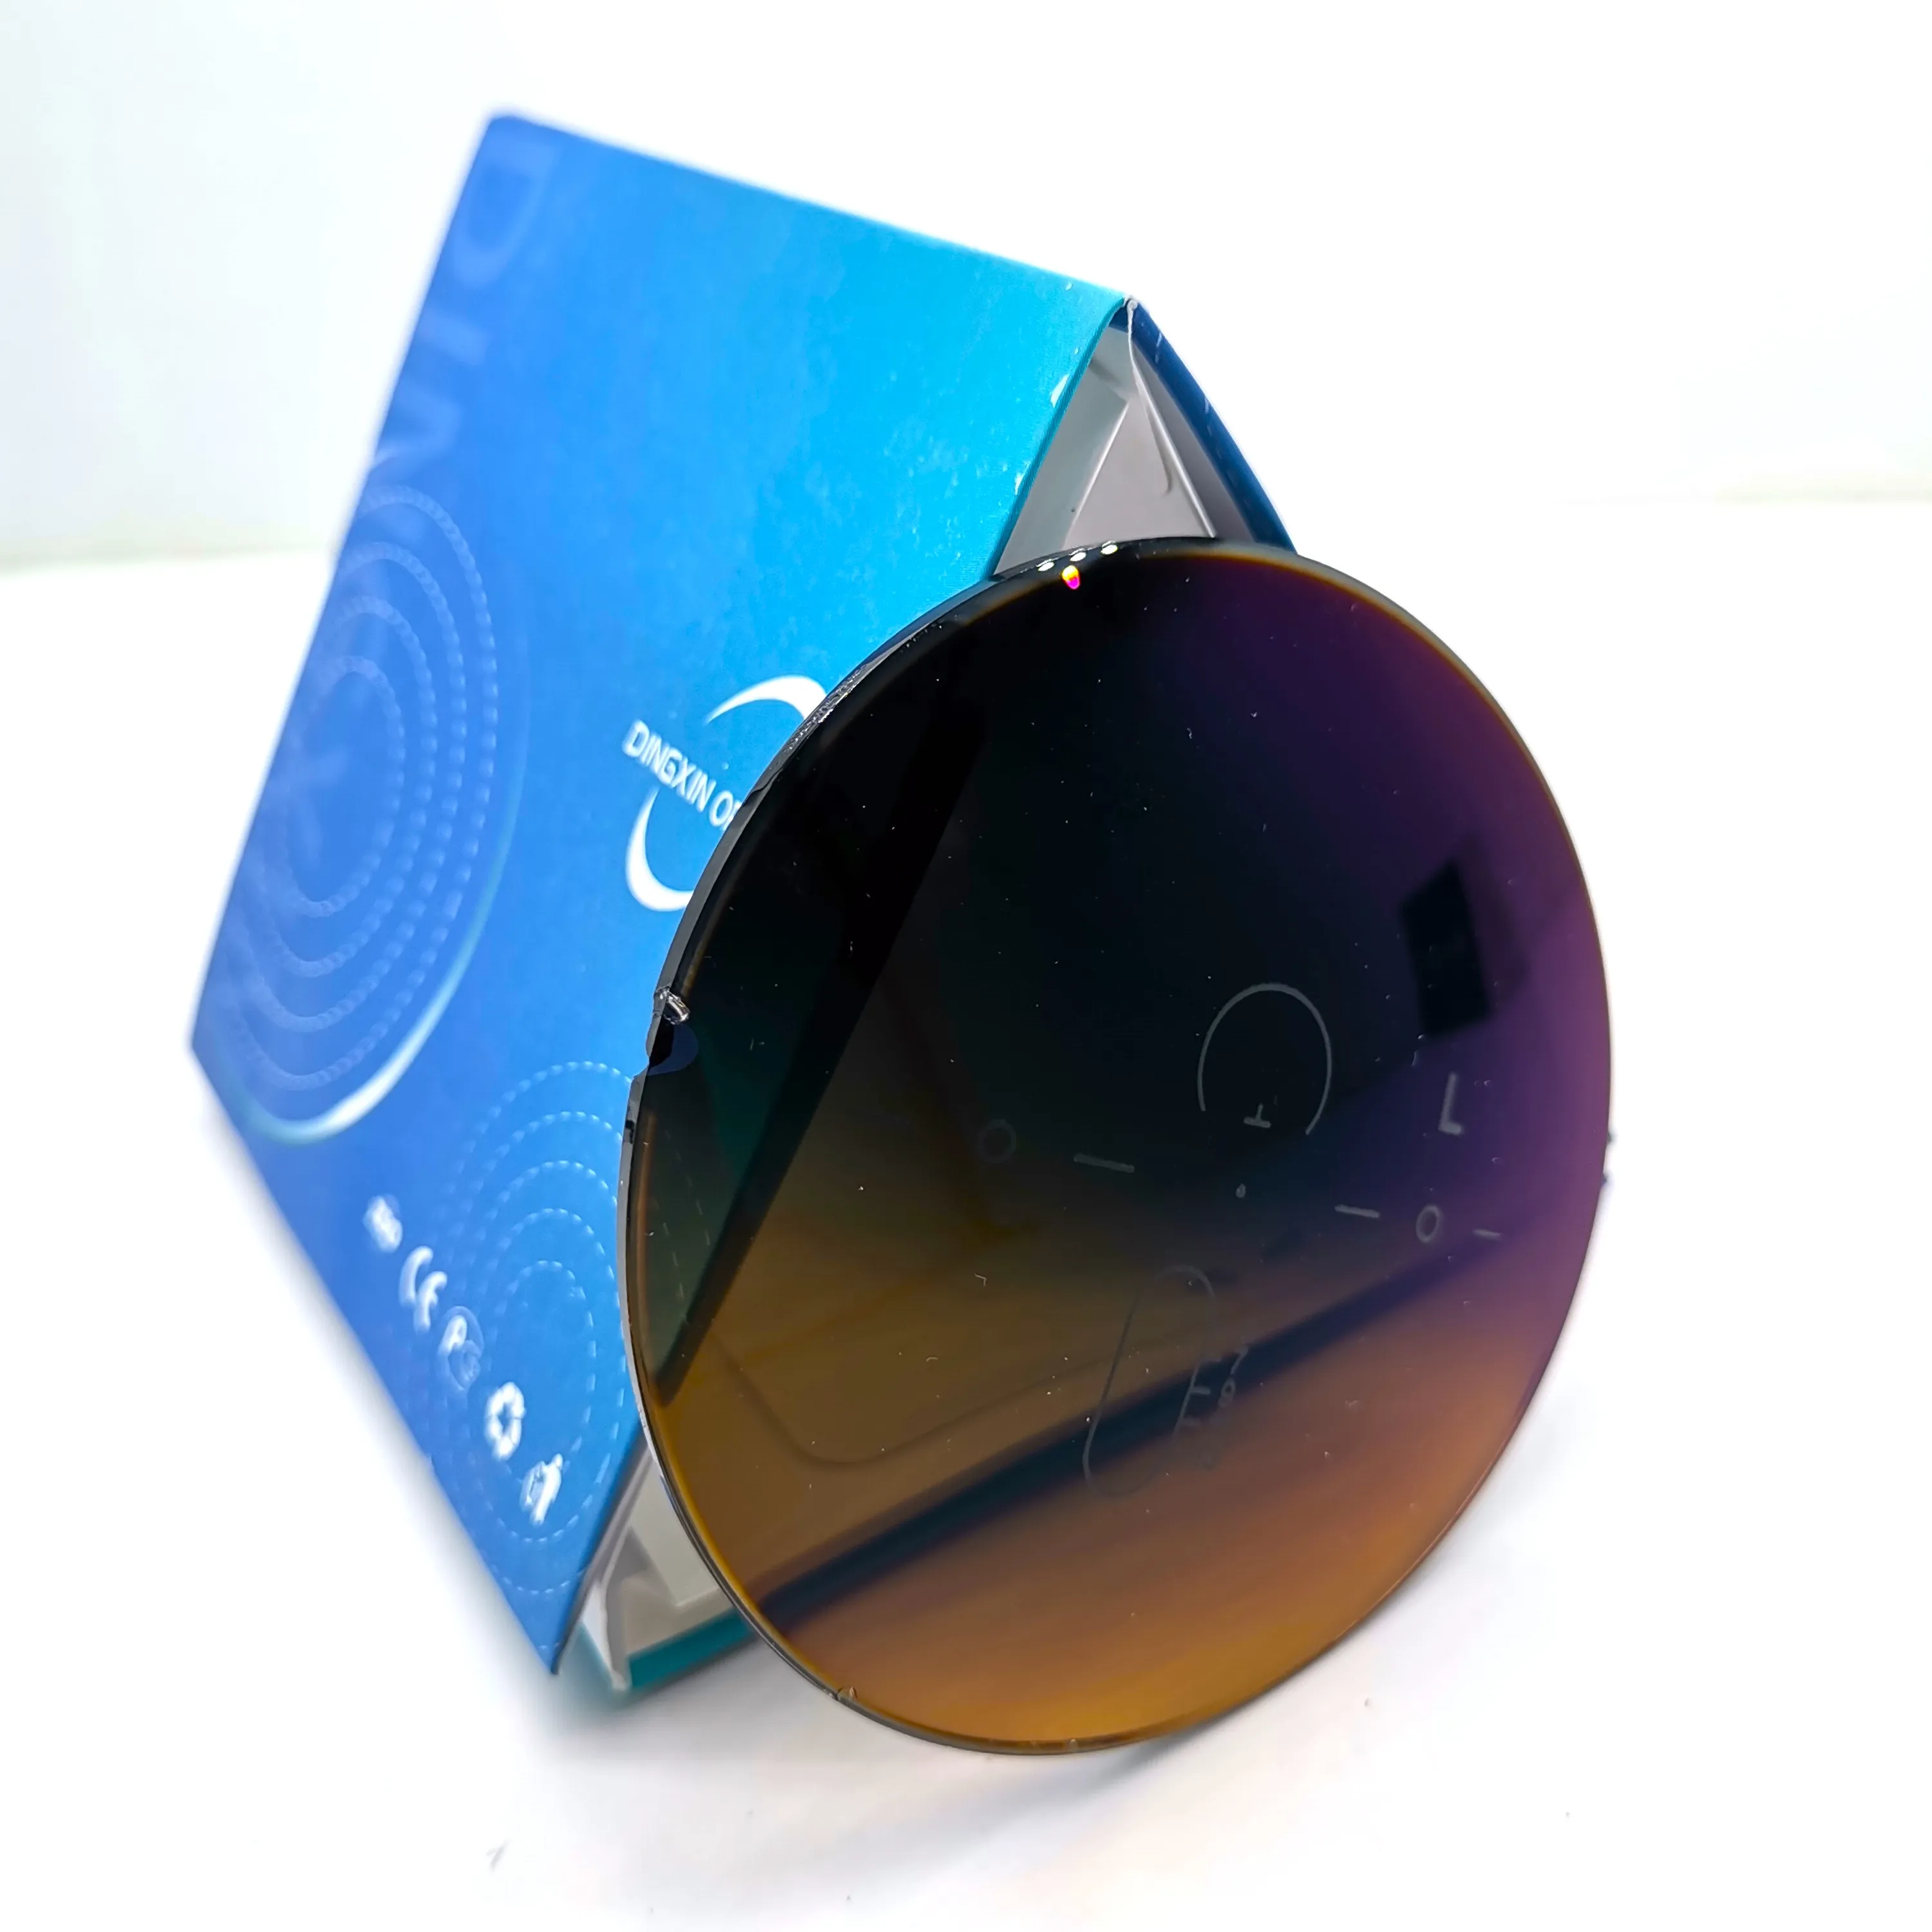 WDO 1.60 MR-8 forme libre verres teintés polarisés 30% verres de prescription bruns pour lunettes fabricant de verres verres de golf